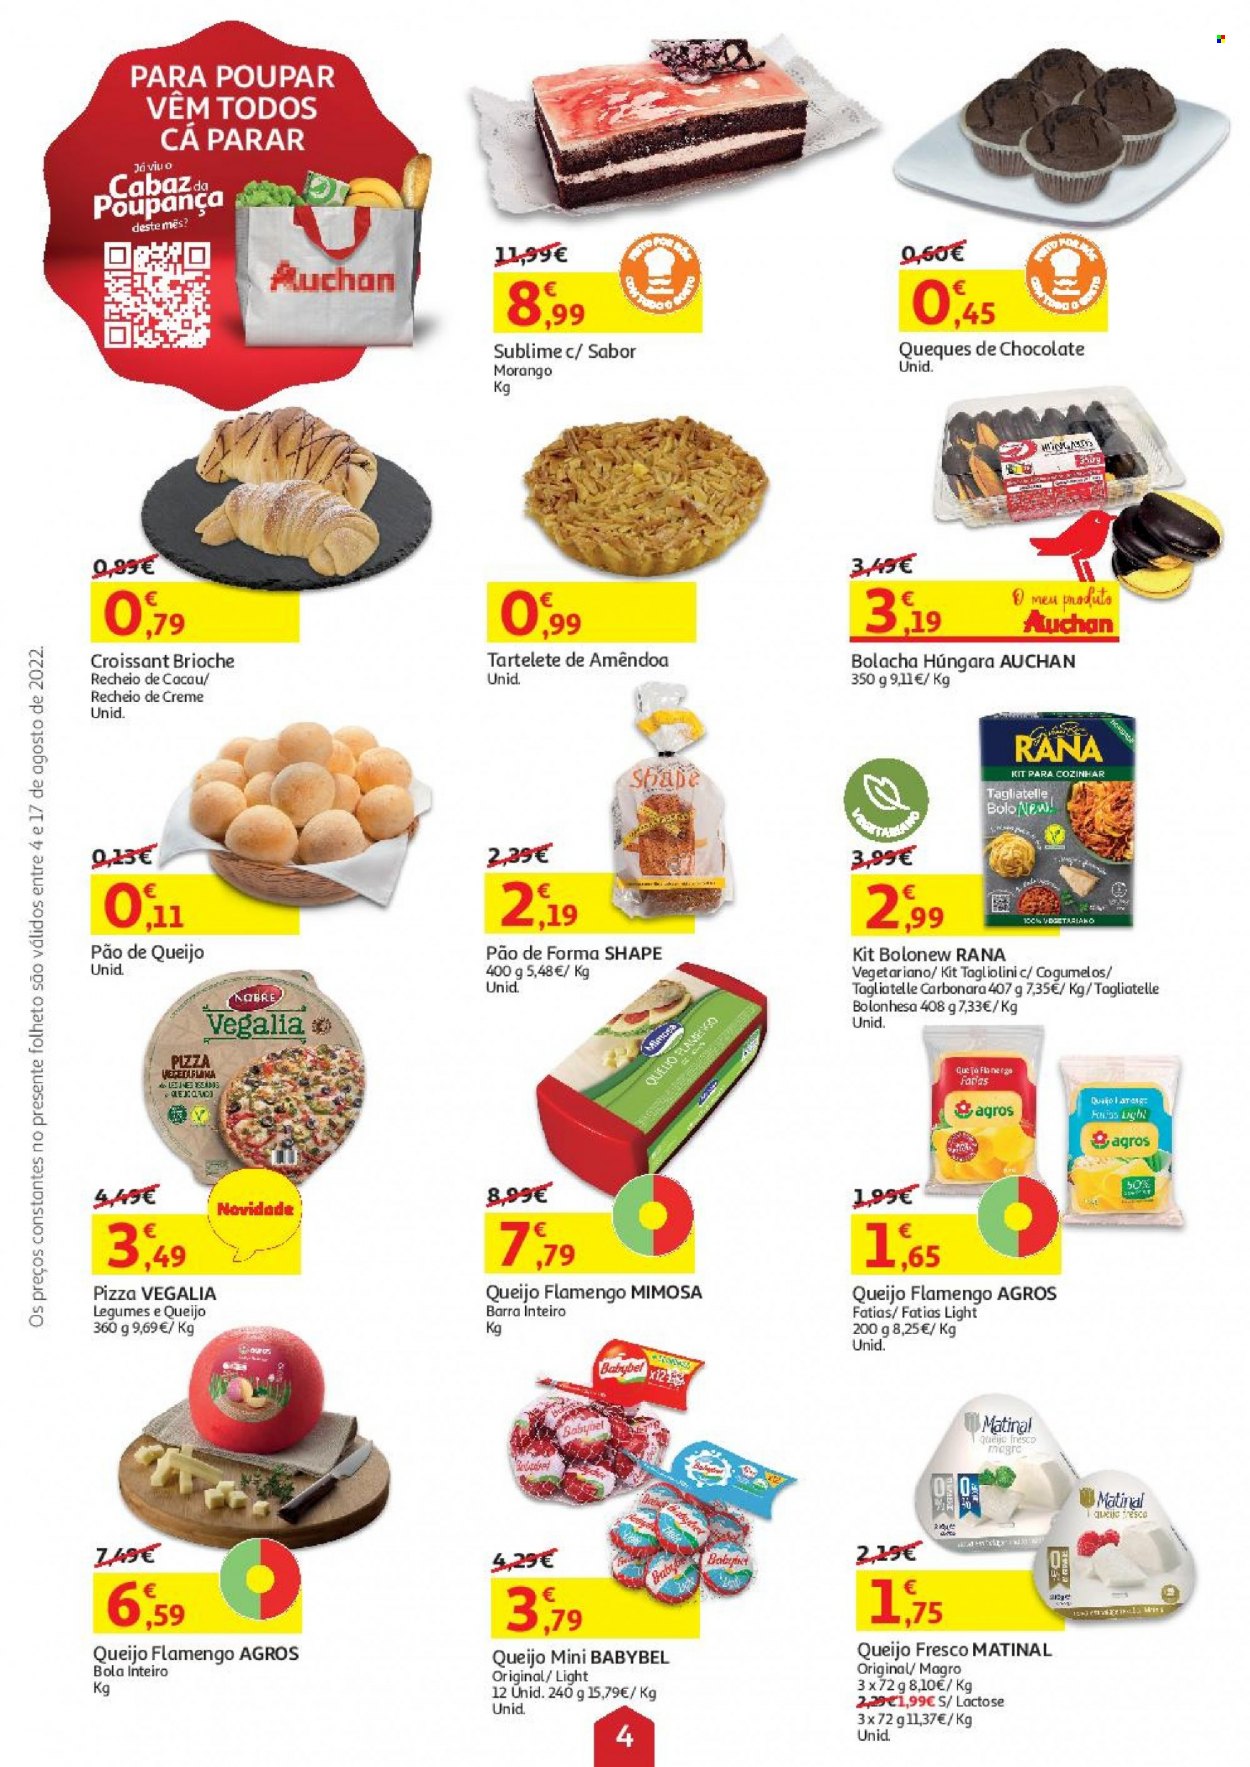 thumbnail - Folheto Auchan - 4.8.2022 - 17.8.2022 - Produtos em promoção - pão de queijo, pão, pão de forma, bolo, croissant, cogumelo, pizza, Babybel, queijo fresco, queijo flamengo, Mimosa, bolachas. Página 4.